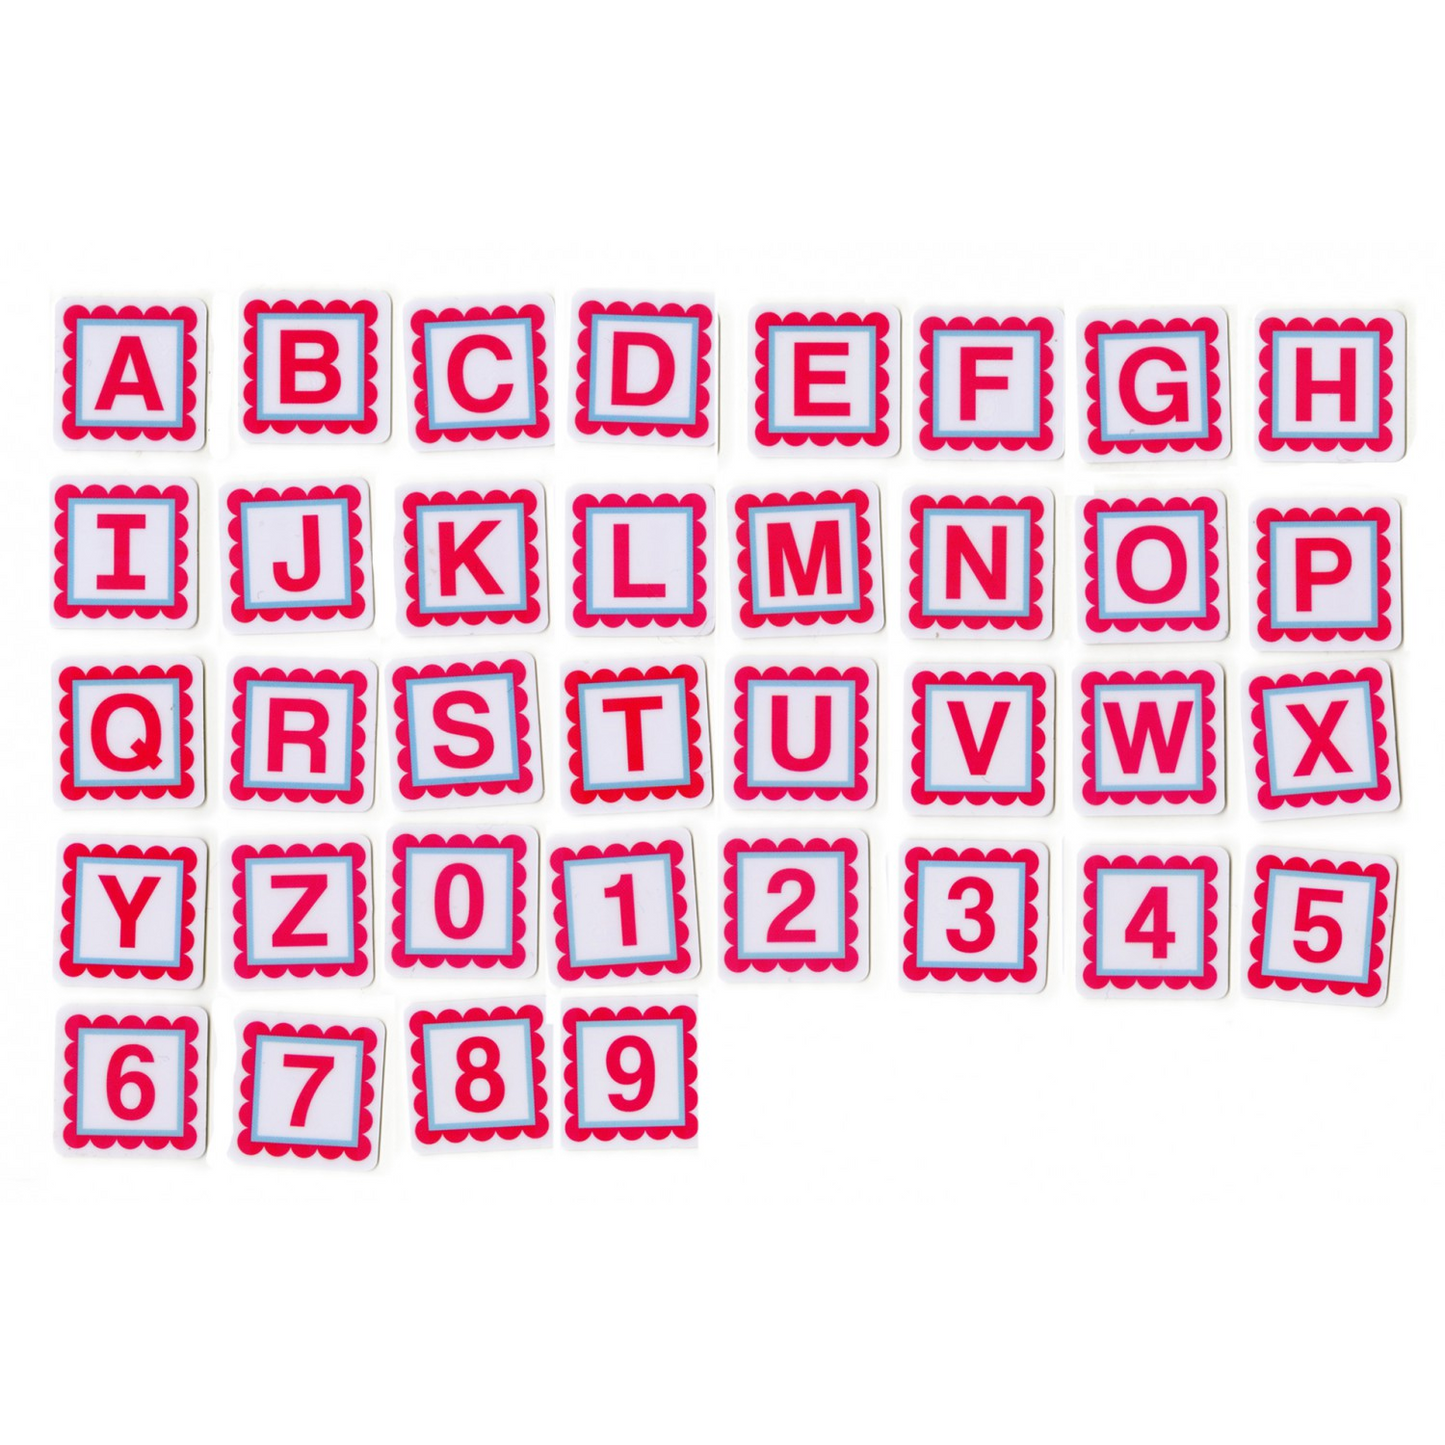 Pink Alphabitties Specialty Marking Tools